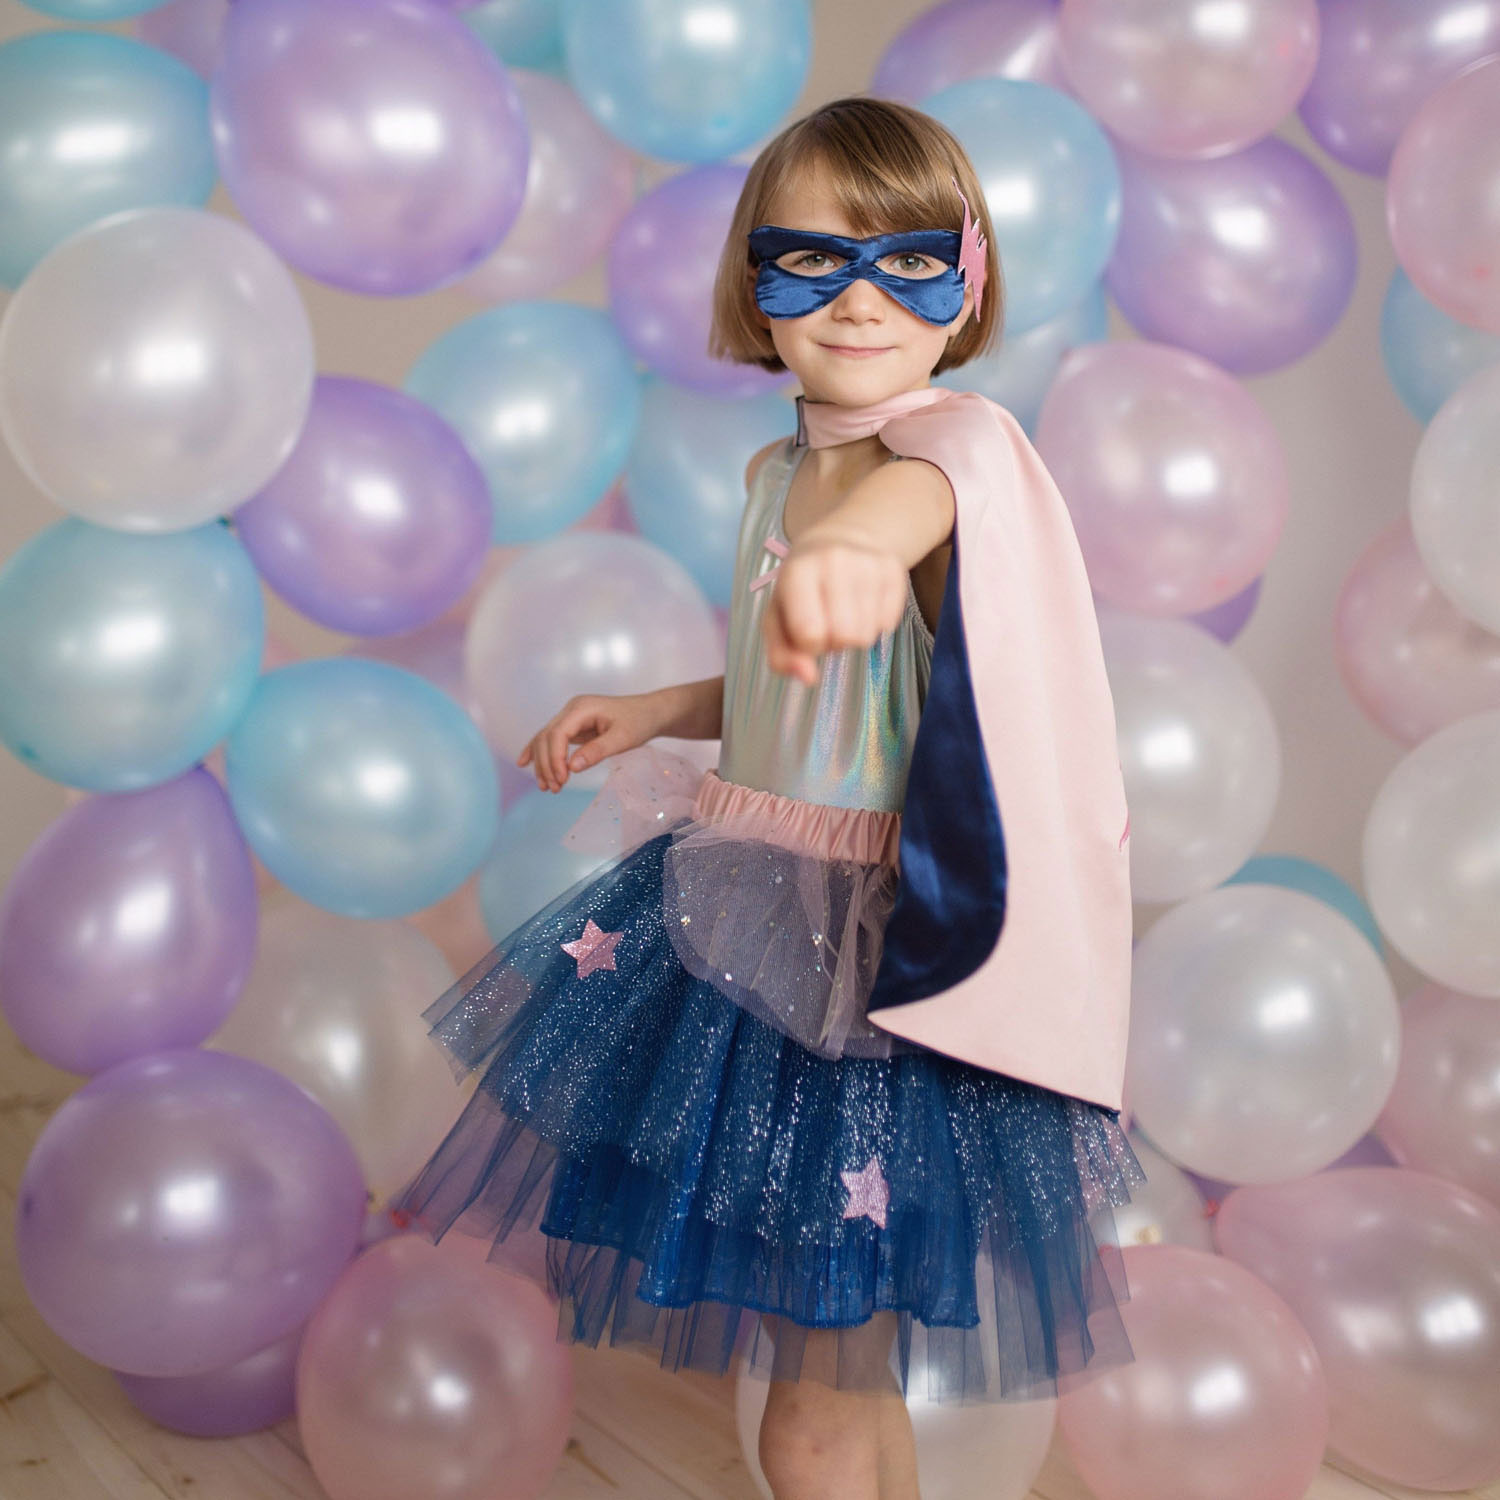 Super-Duper Heroine Dress Up Set Rose/Bleu Marine, 7-8 ans